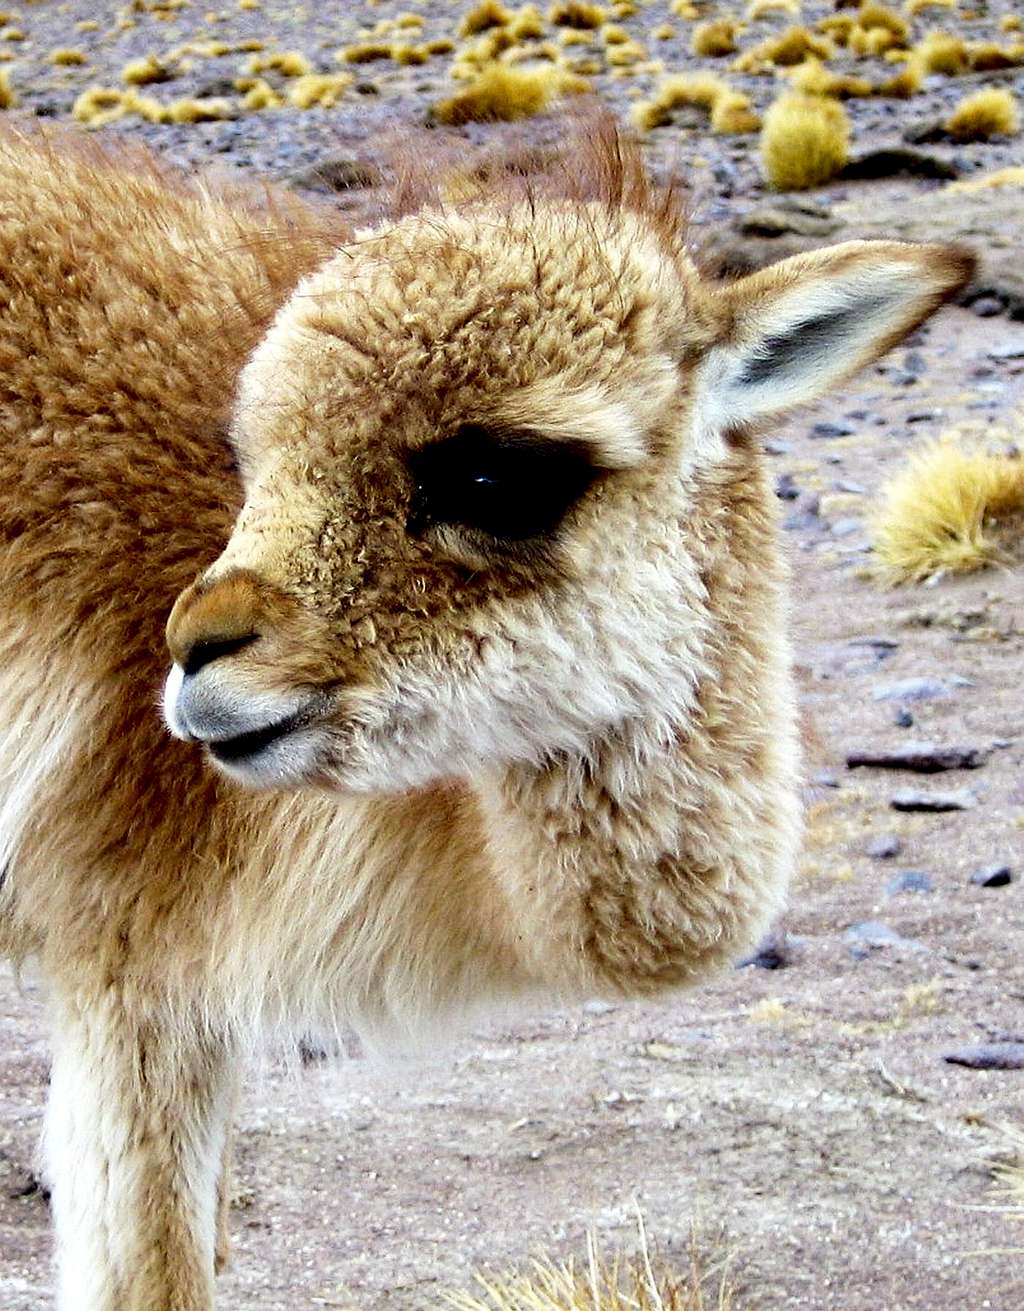 What's cuter than a llama?